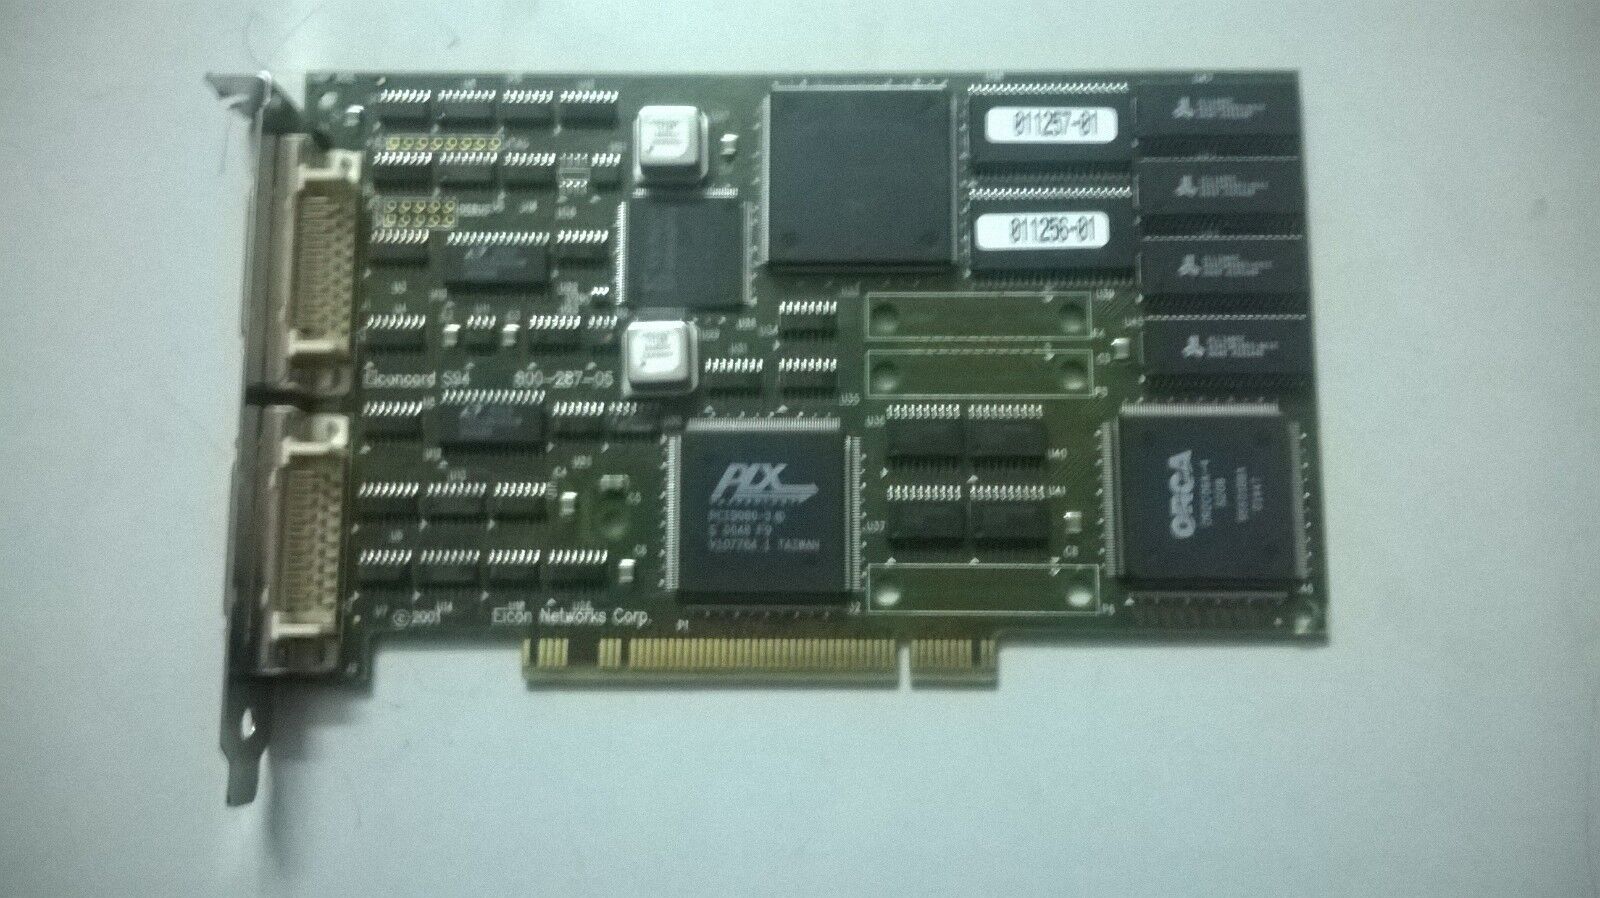 Eicon Dialogic Eiconcard S94 2-Port PCI WAN Card (800-287-05)